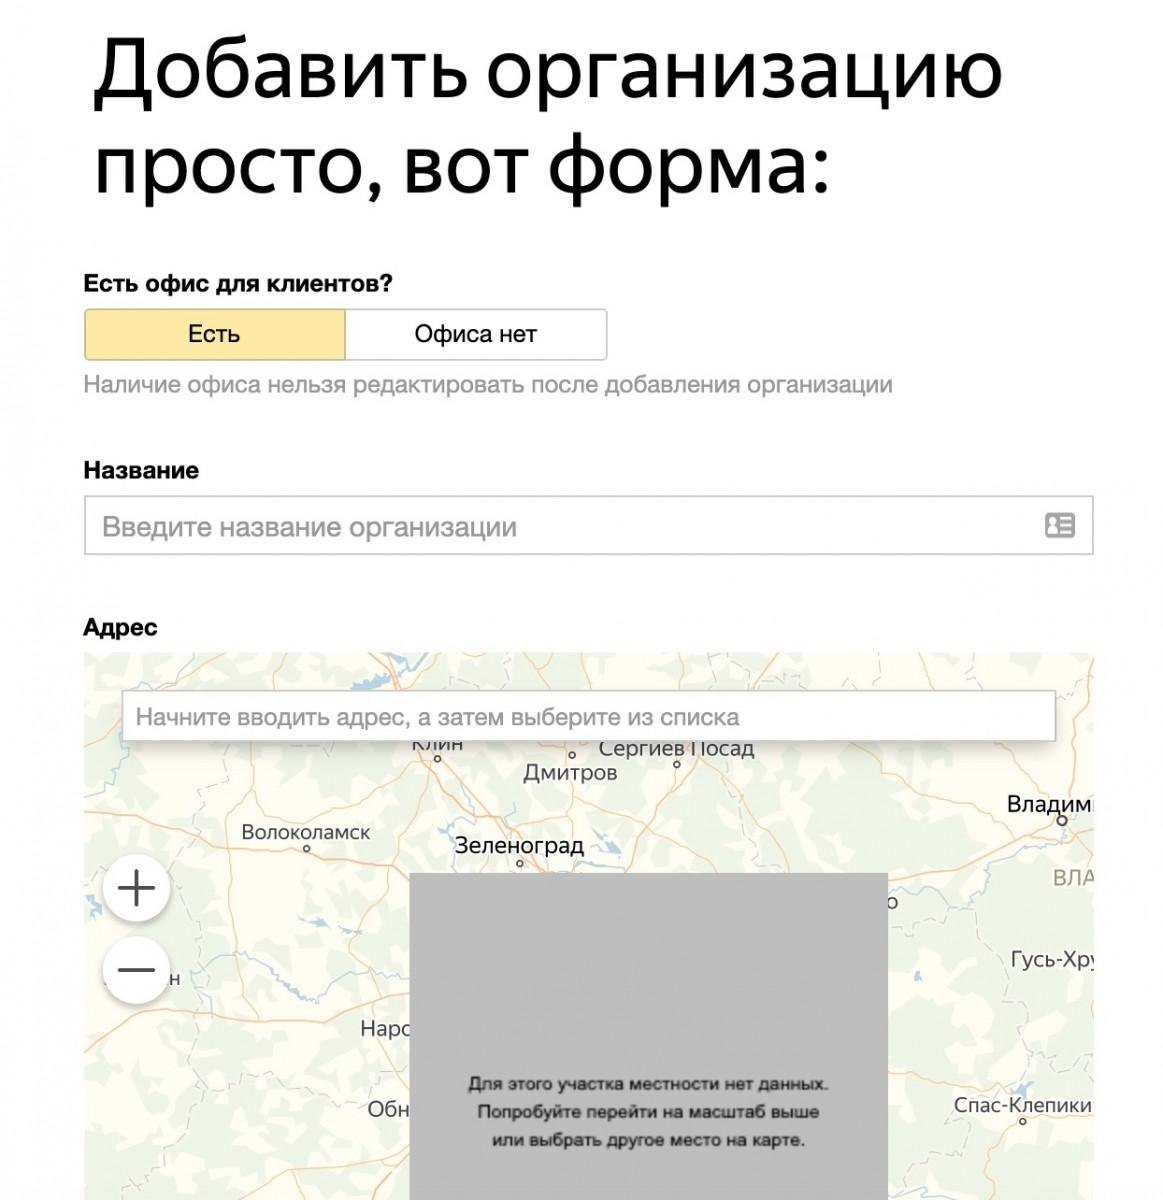 форма Яндекс Справочника 